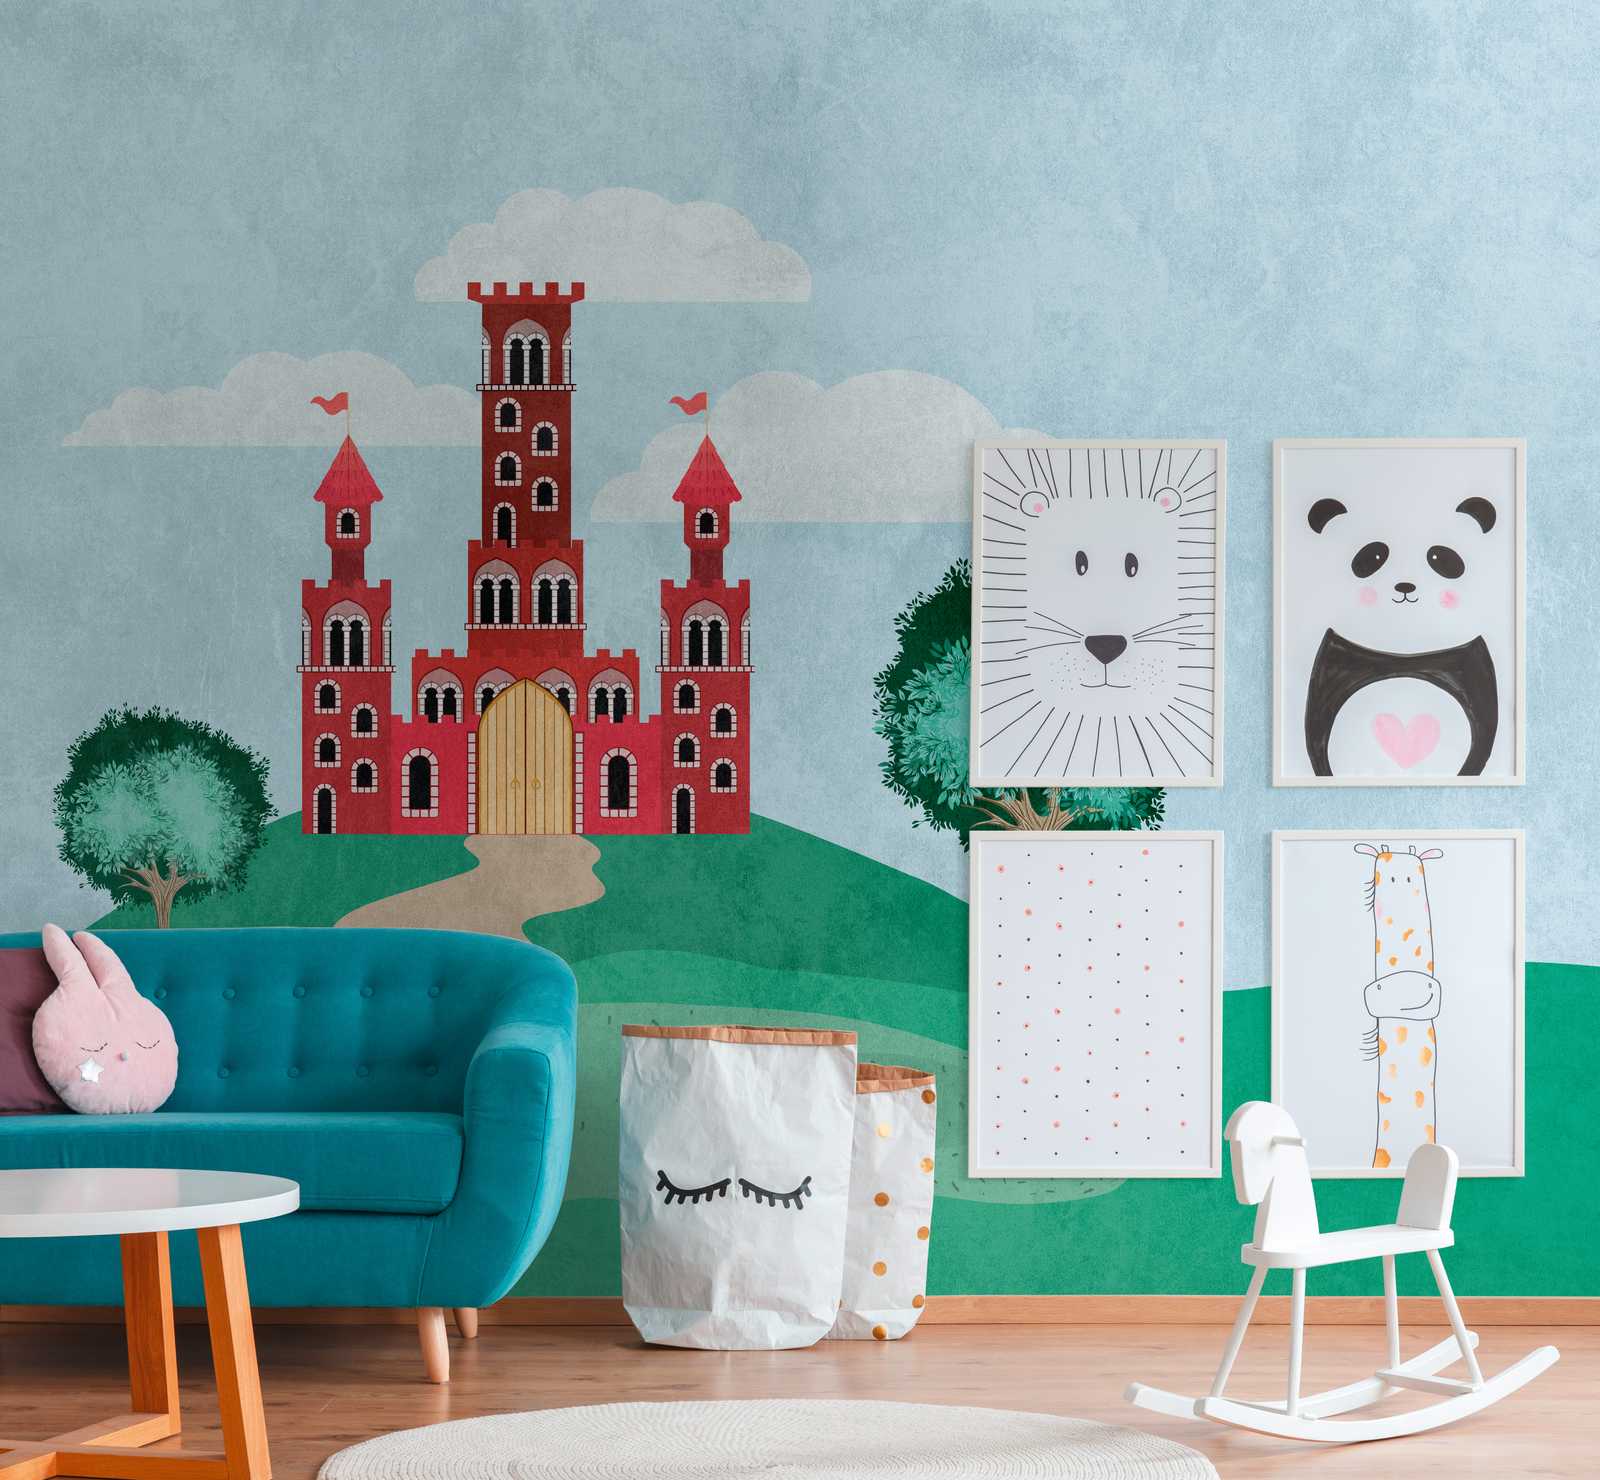             Novedades en papel pintado - papel pintado con motivo de castillo de cuento de hadas para la habitación de los niños
        